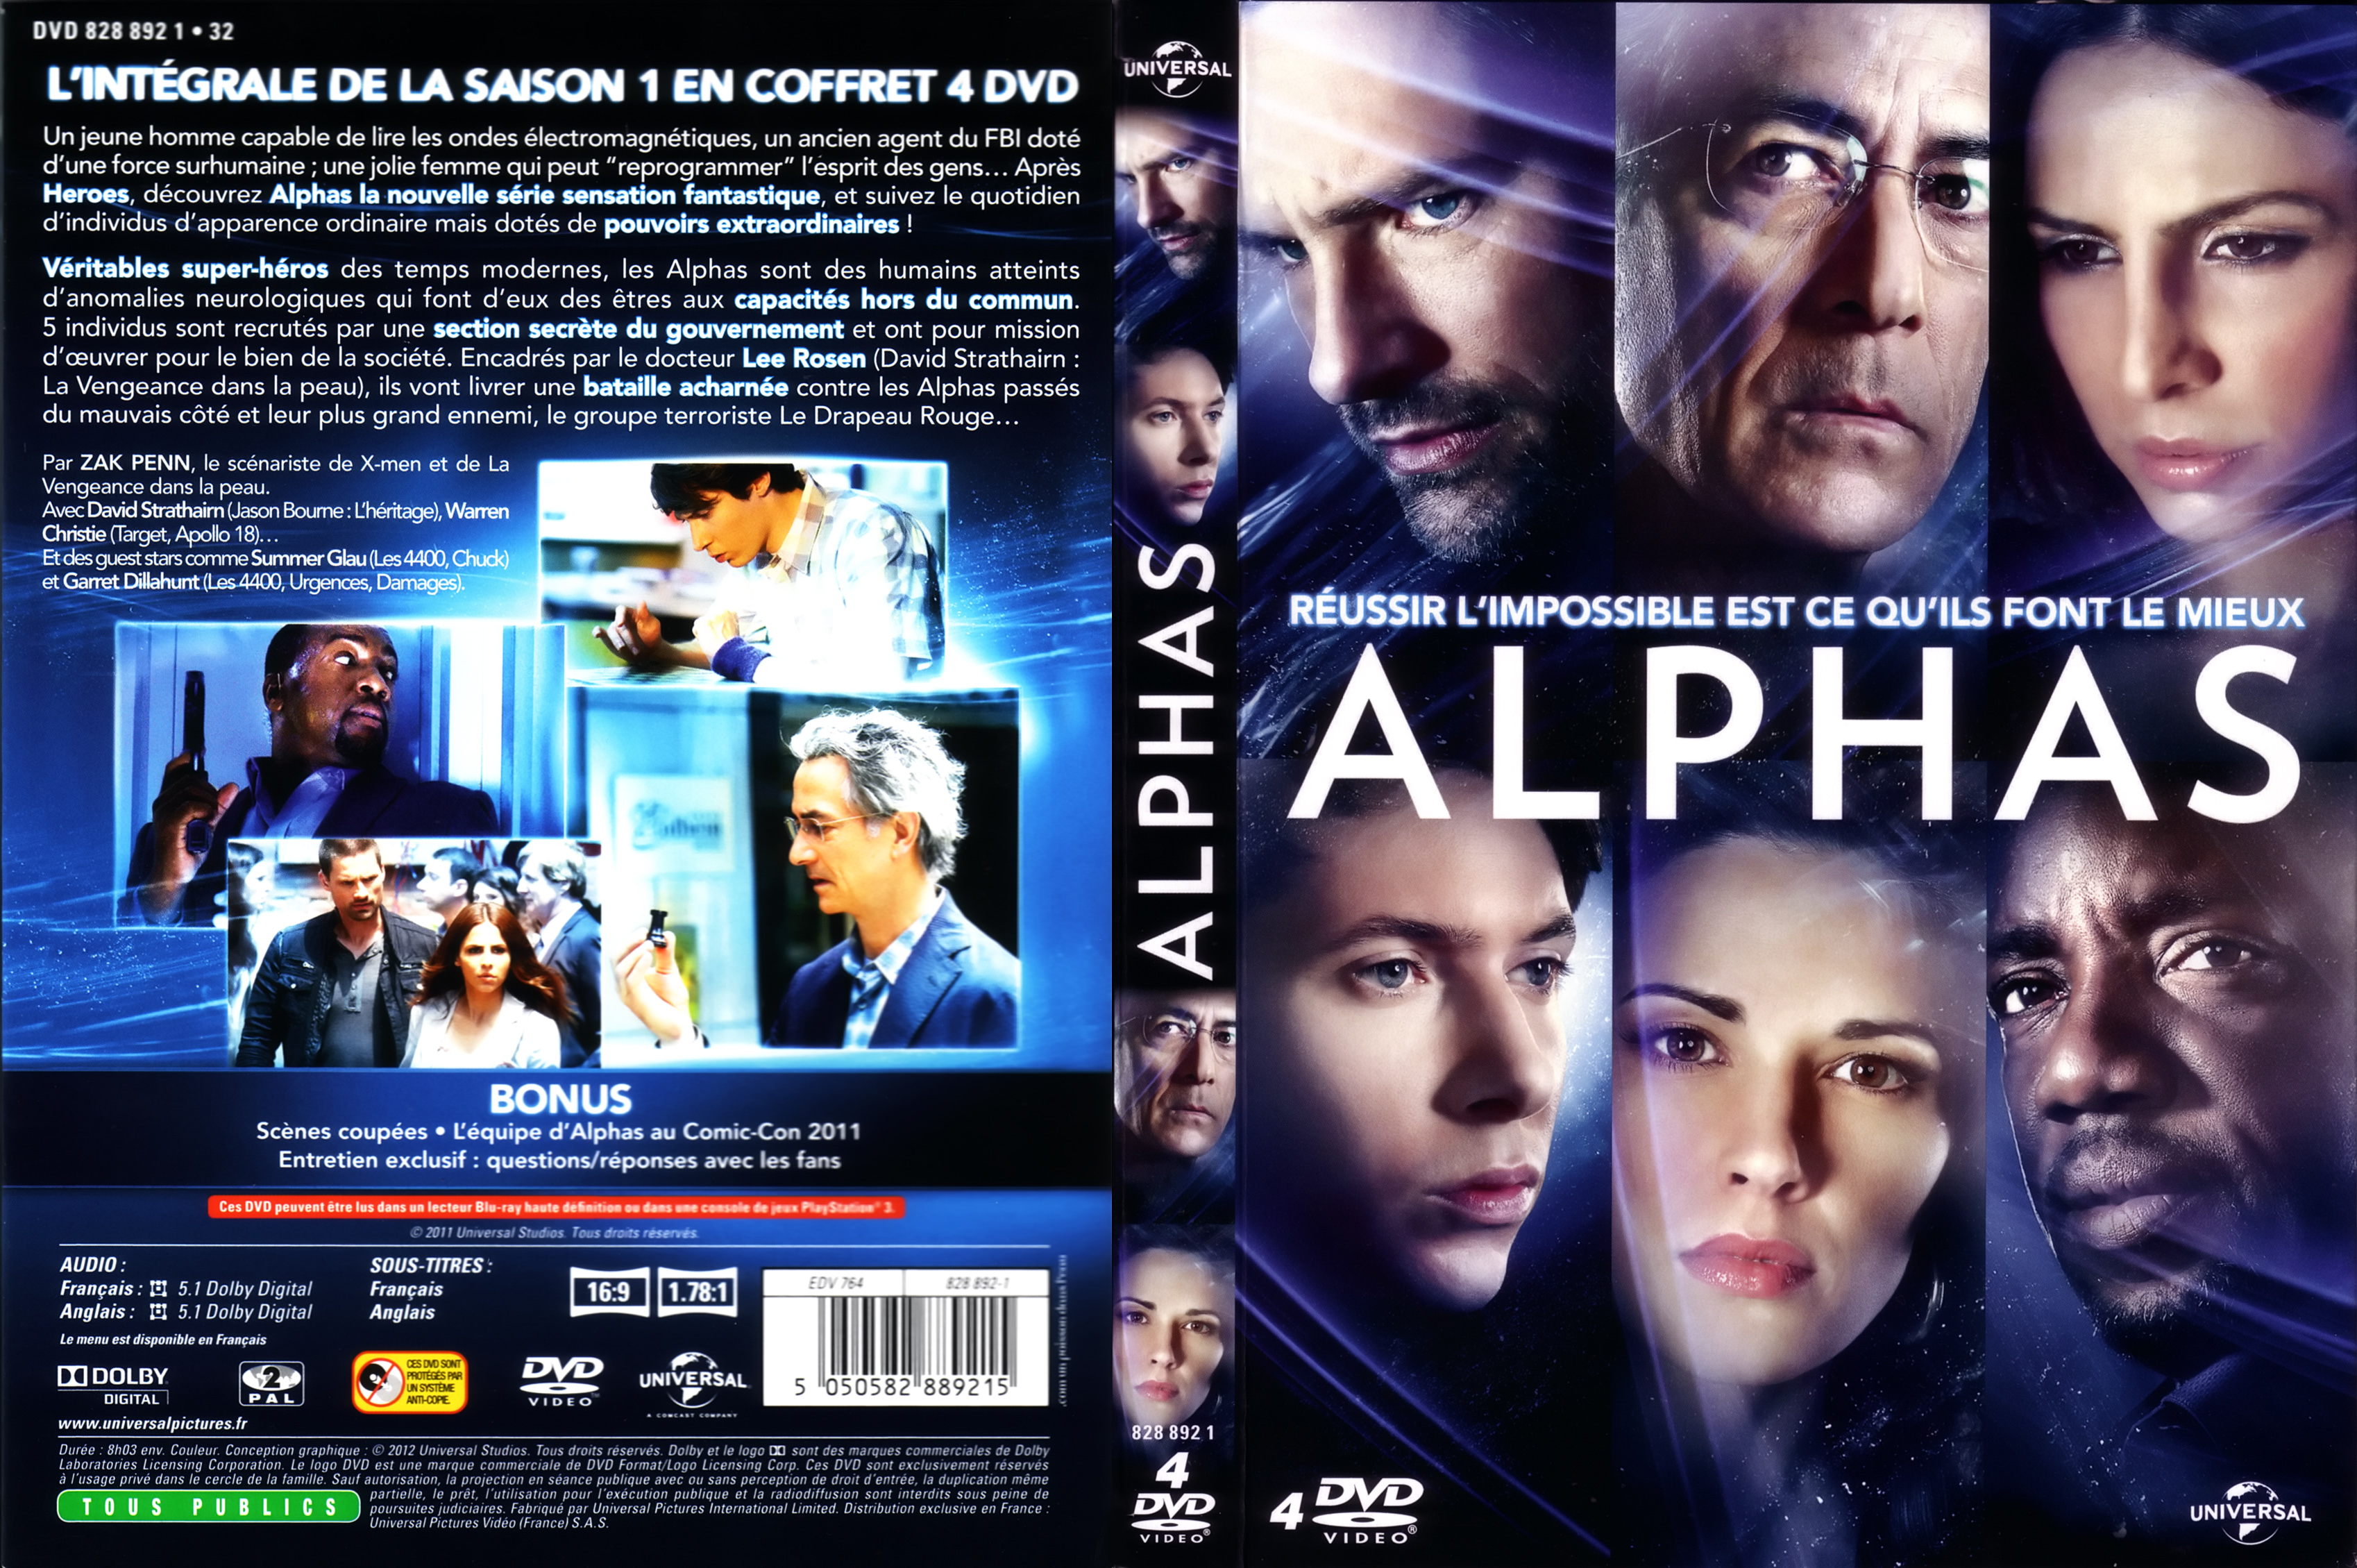 Jaquette DVD Alphas saison 1 COFFRET